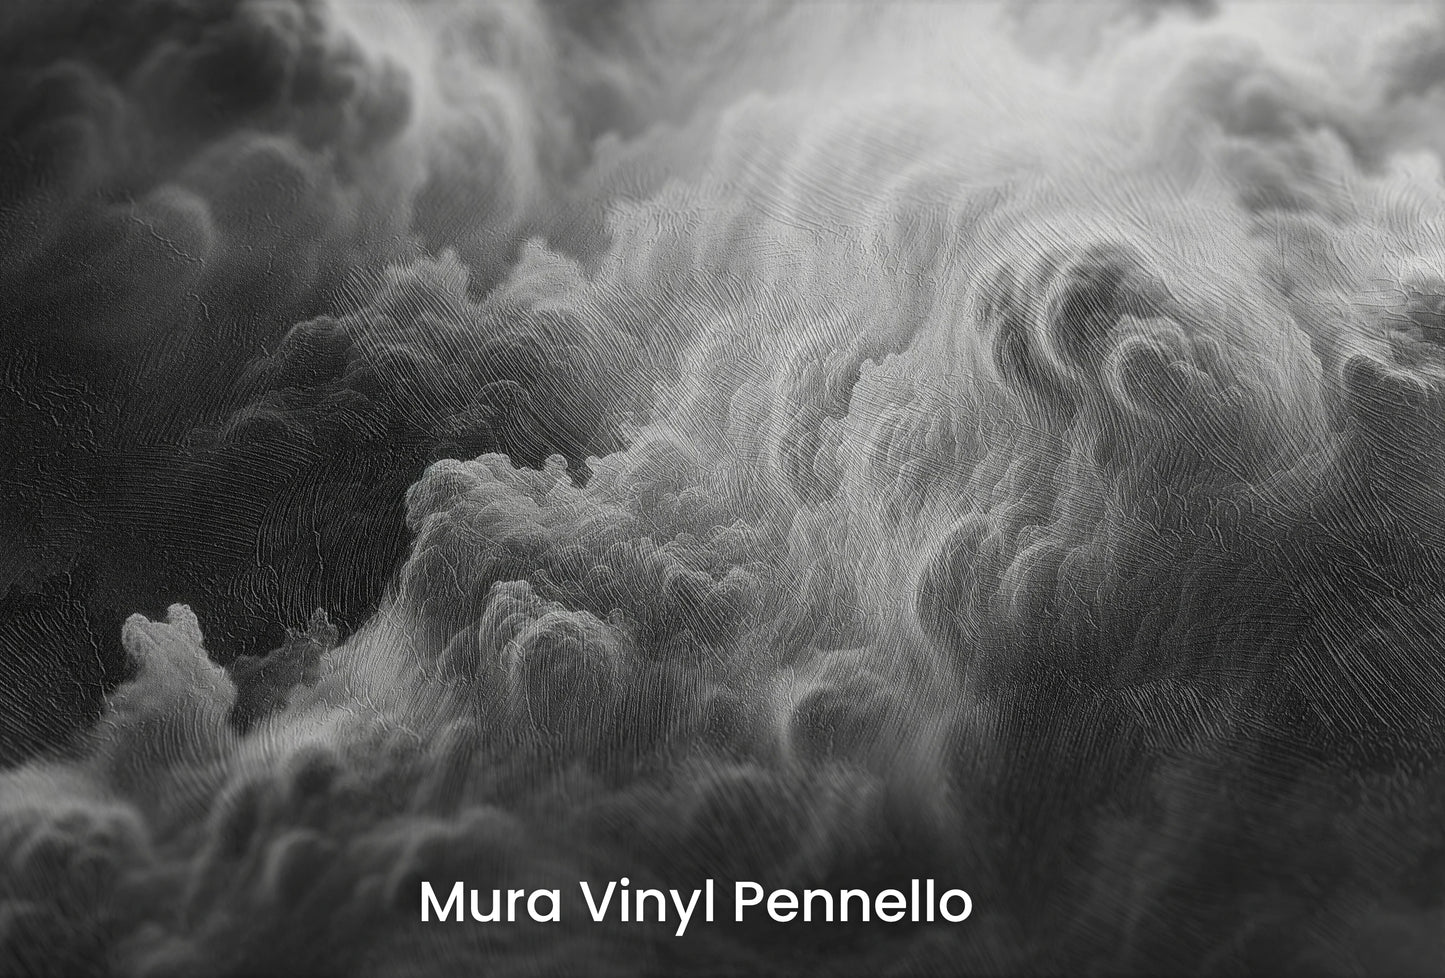 Zbliżenie na artystyczną fototapetę o nazwie Tempest's Might na podłożu Mura Vinyl Pennello - faktura pociągnięć pędzla malarskiego.